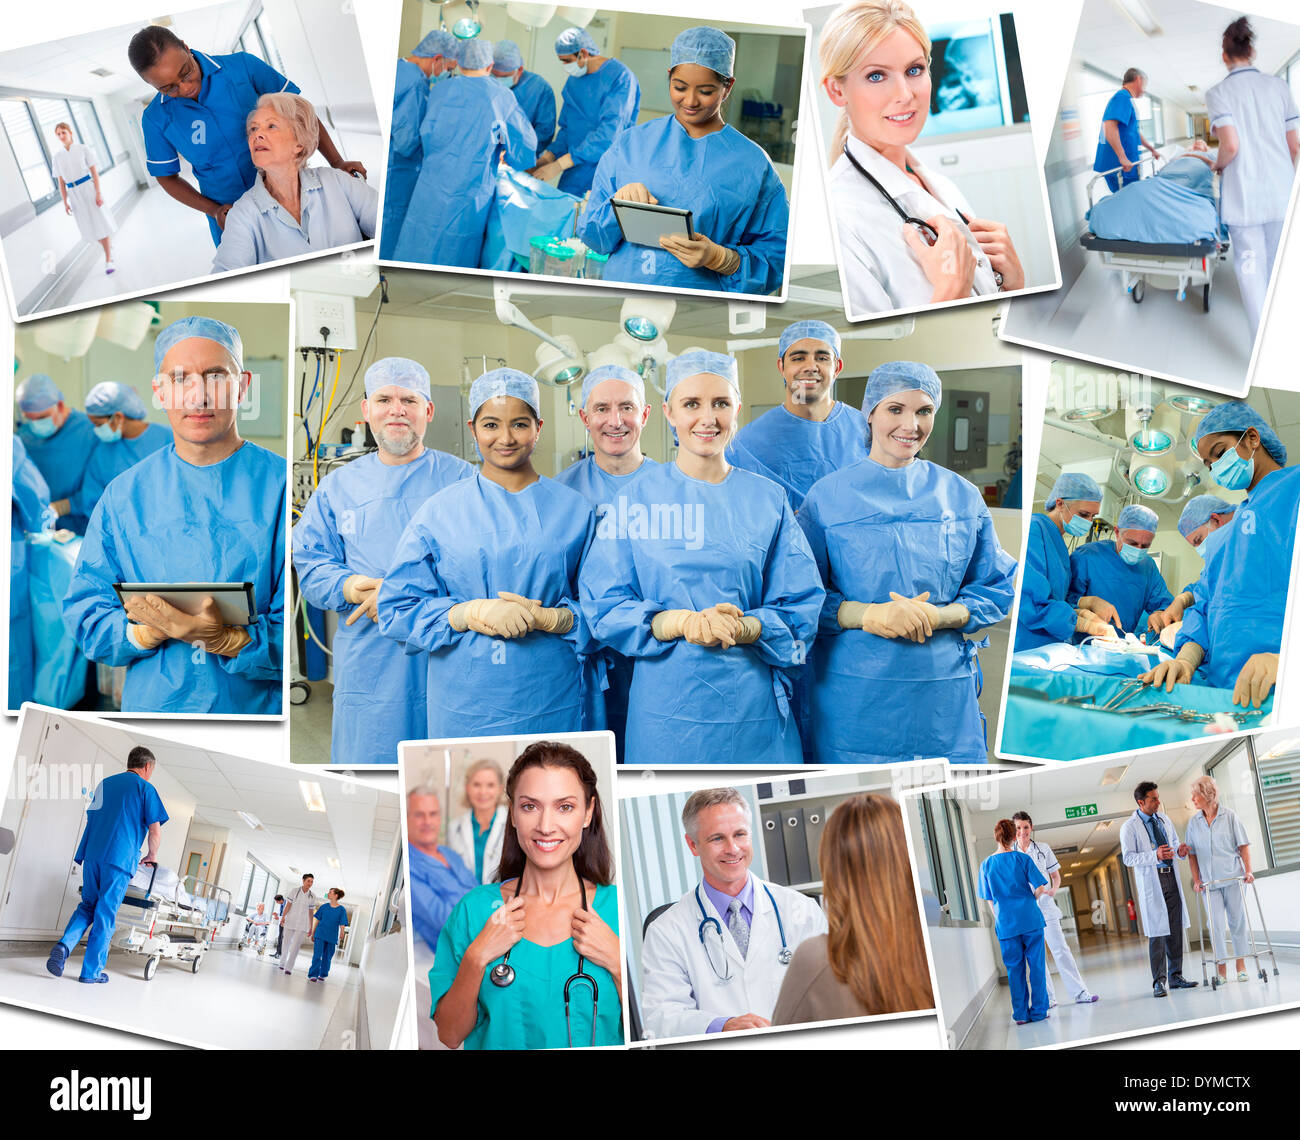 Medical team delle persone uomini e donne medici infermieri in ospedale la cura per i pazienti anziani di eseguire un intervento chirurgico in sala operatoria Foto Stock